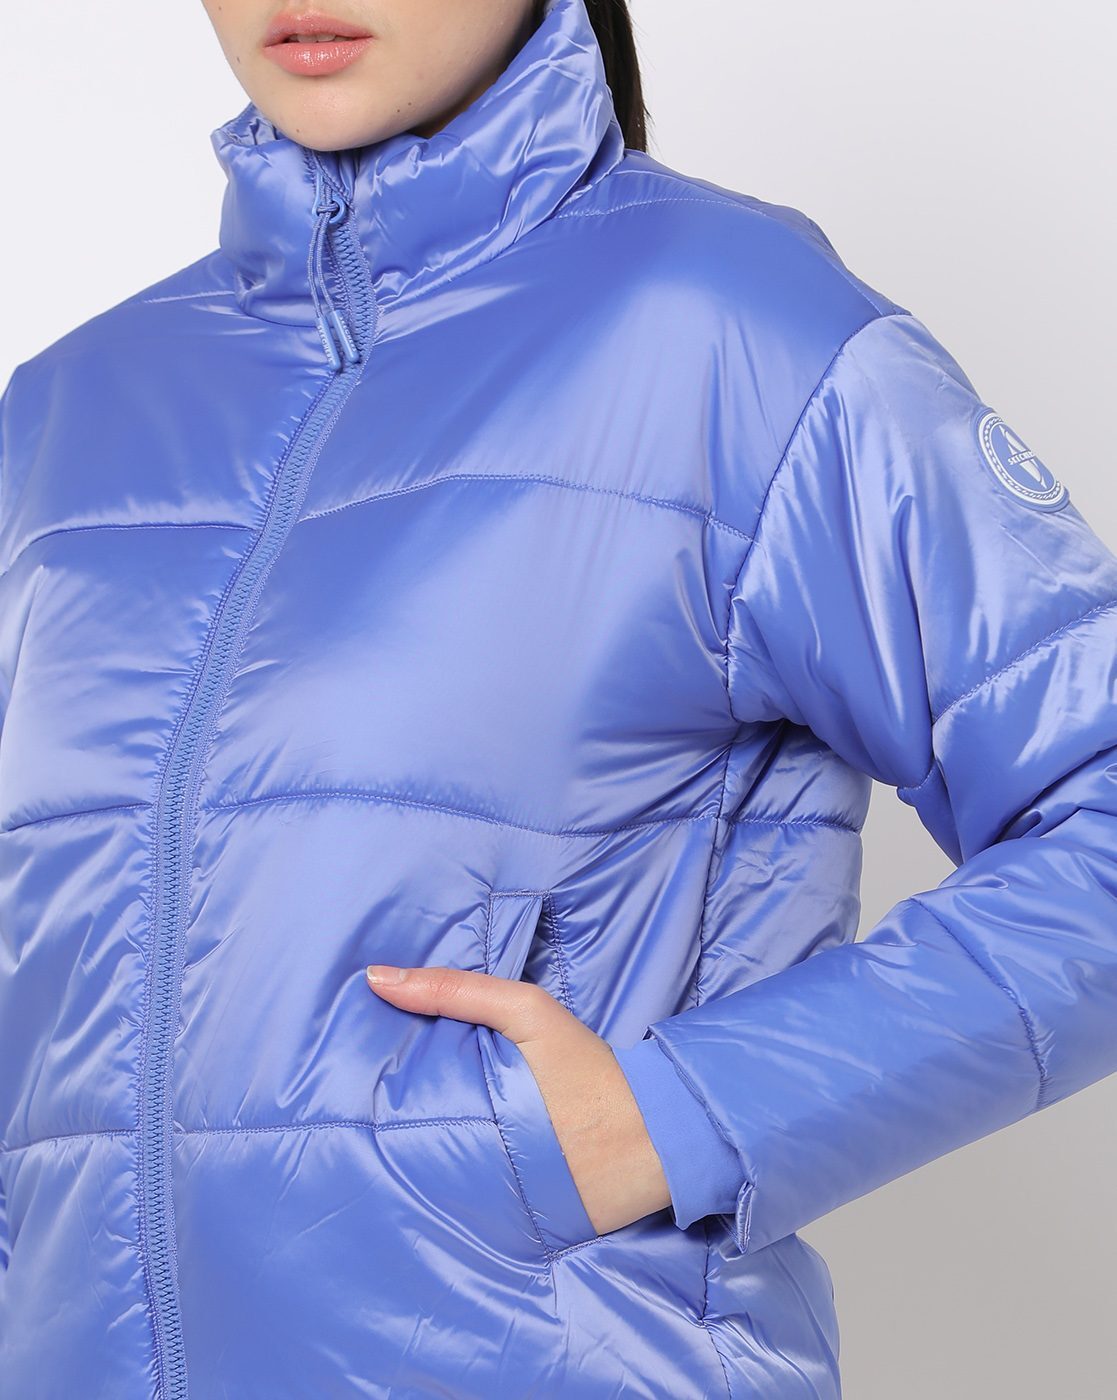 Buy Blue Jackets & Coats for Women by Skechers Online